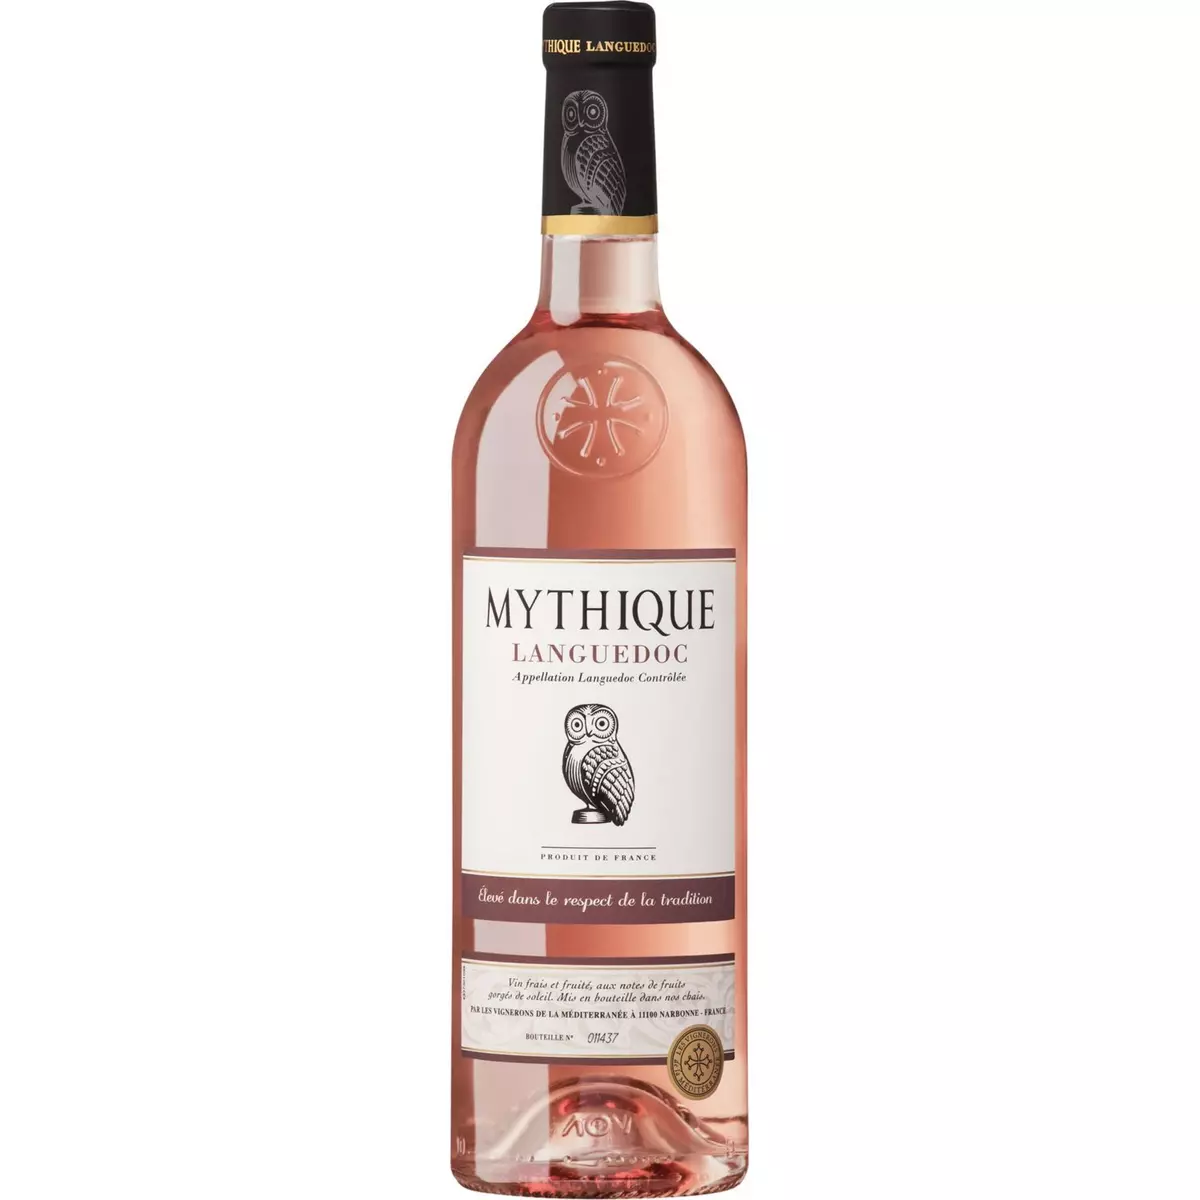 MYTHIQUE AOP Languedoc mythique rosé 75cl